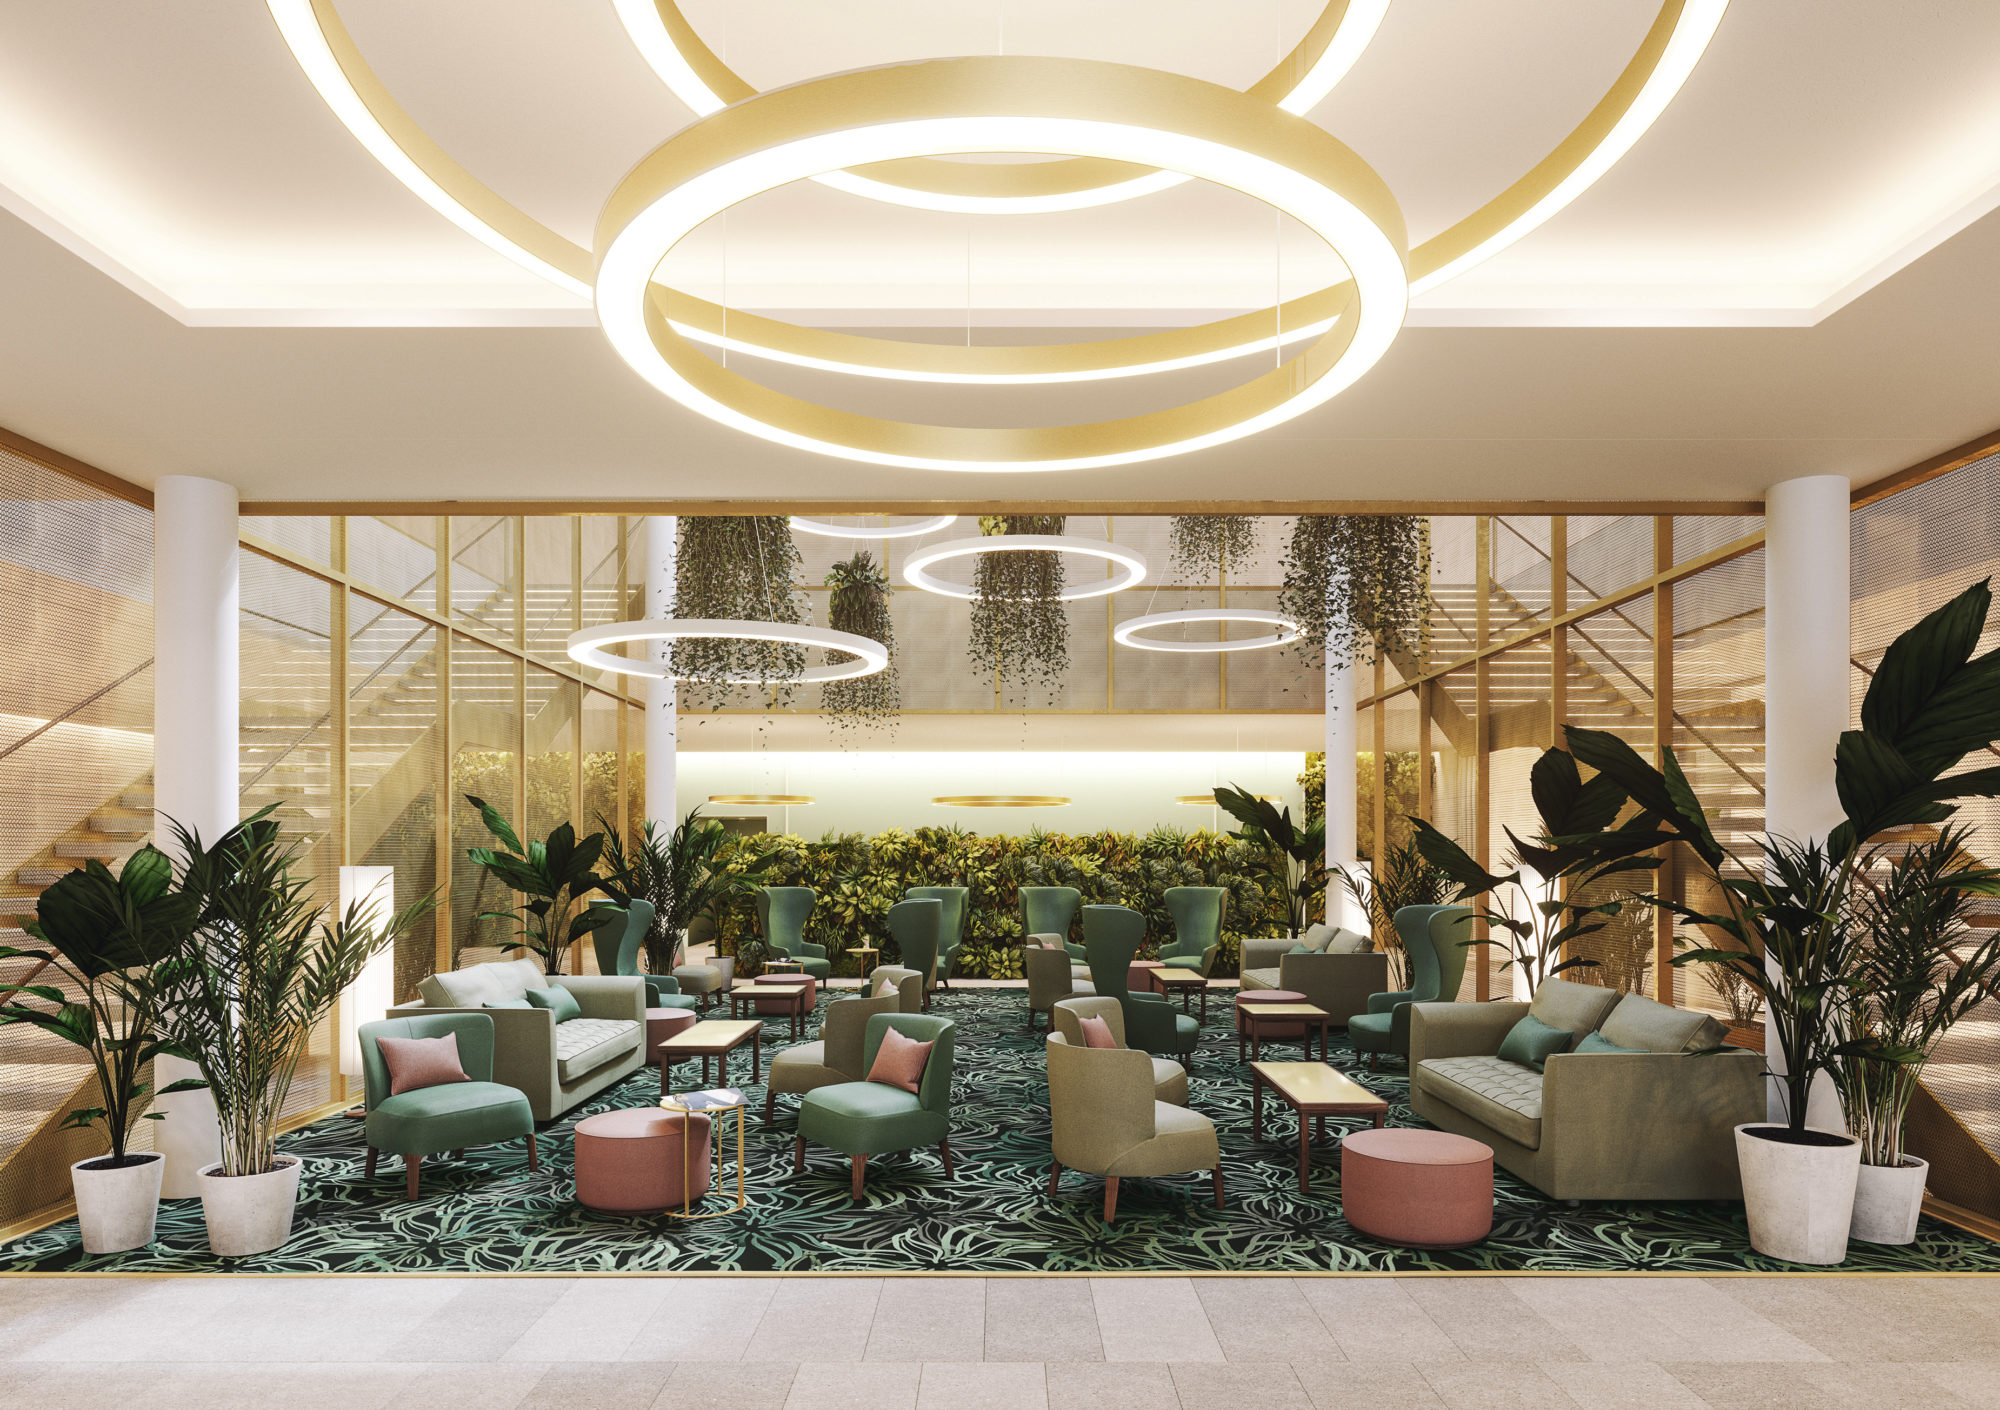 Die stilvolle Lobby wurde vom italienischen Star-Architekten und Designer Matteo Thun entworfen © Matteo Thun & Partners